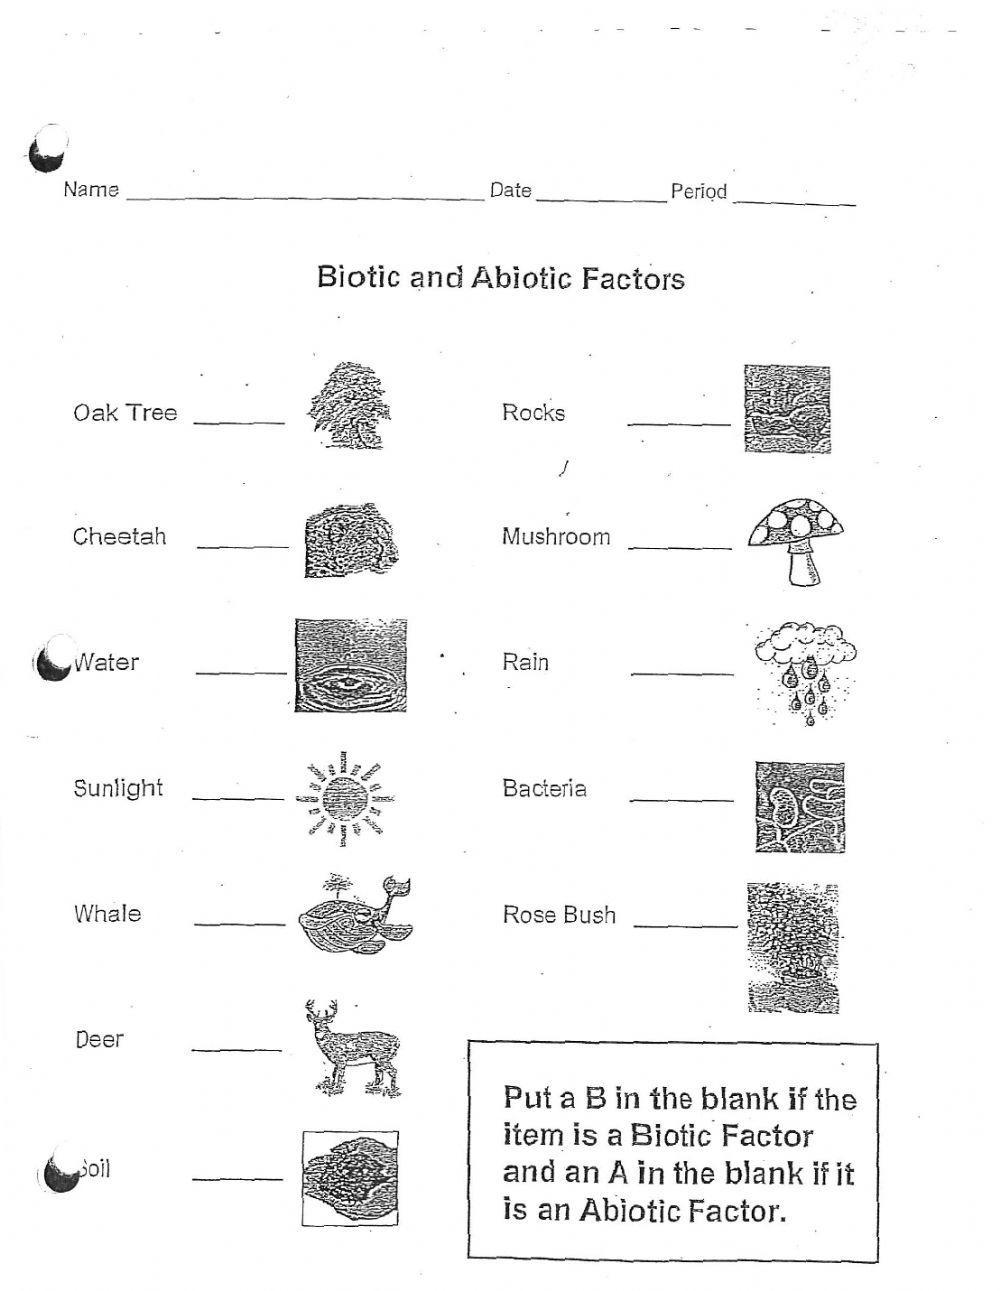 Abiotic or Biotic